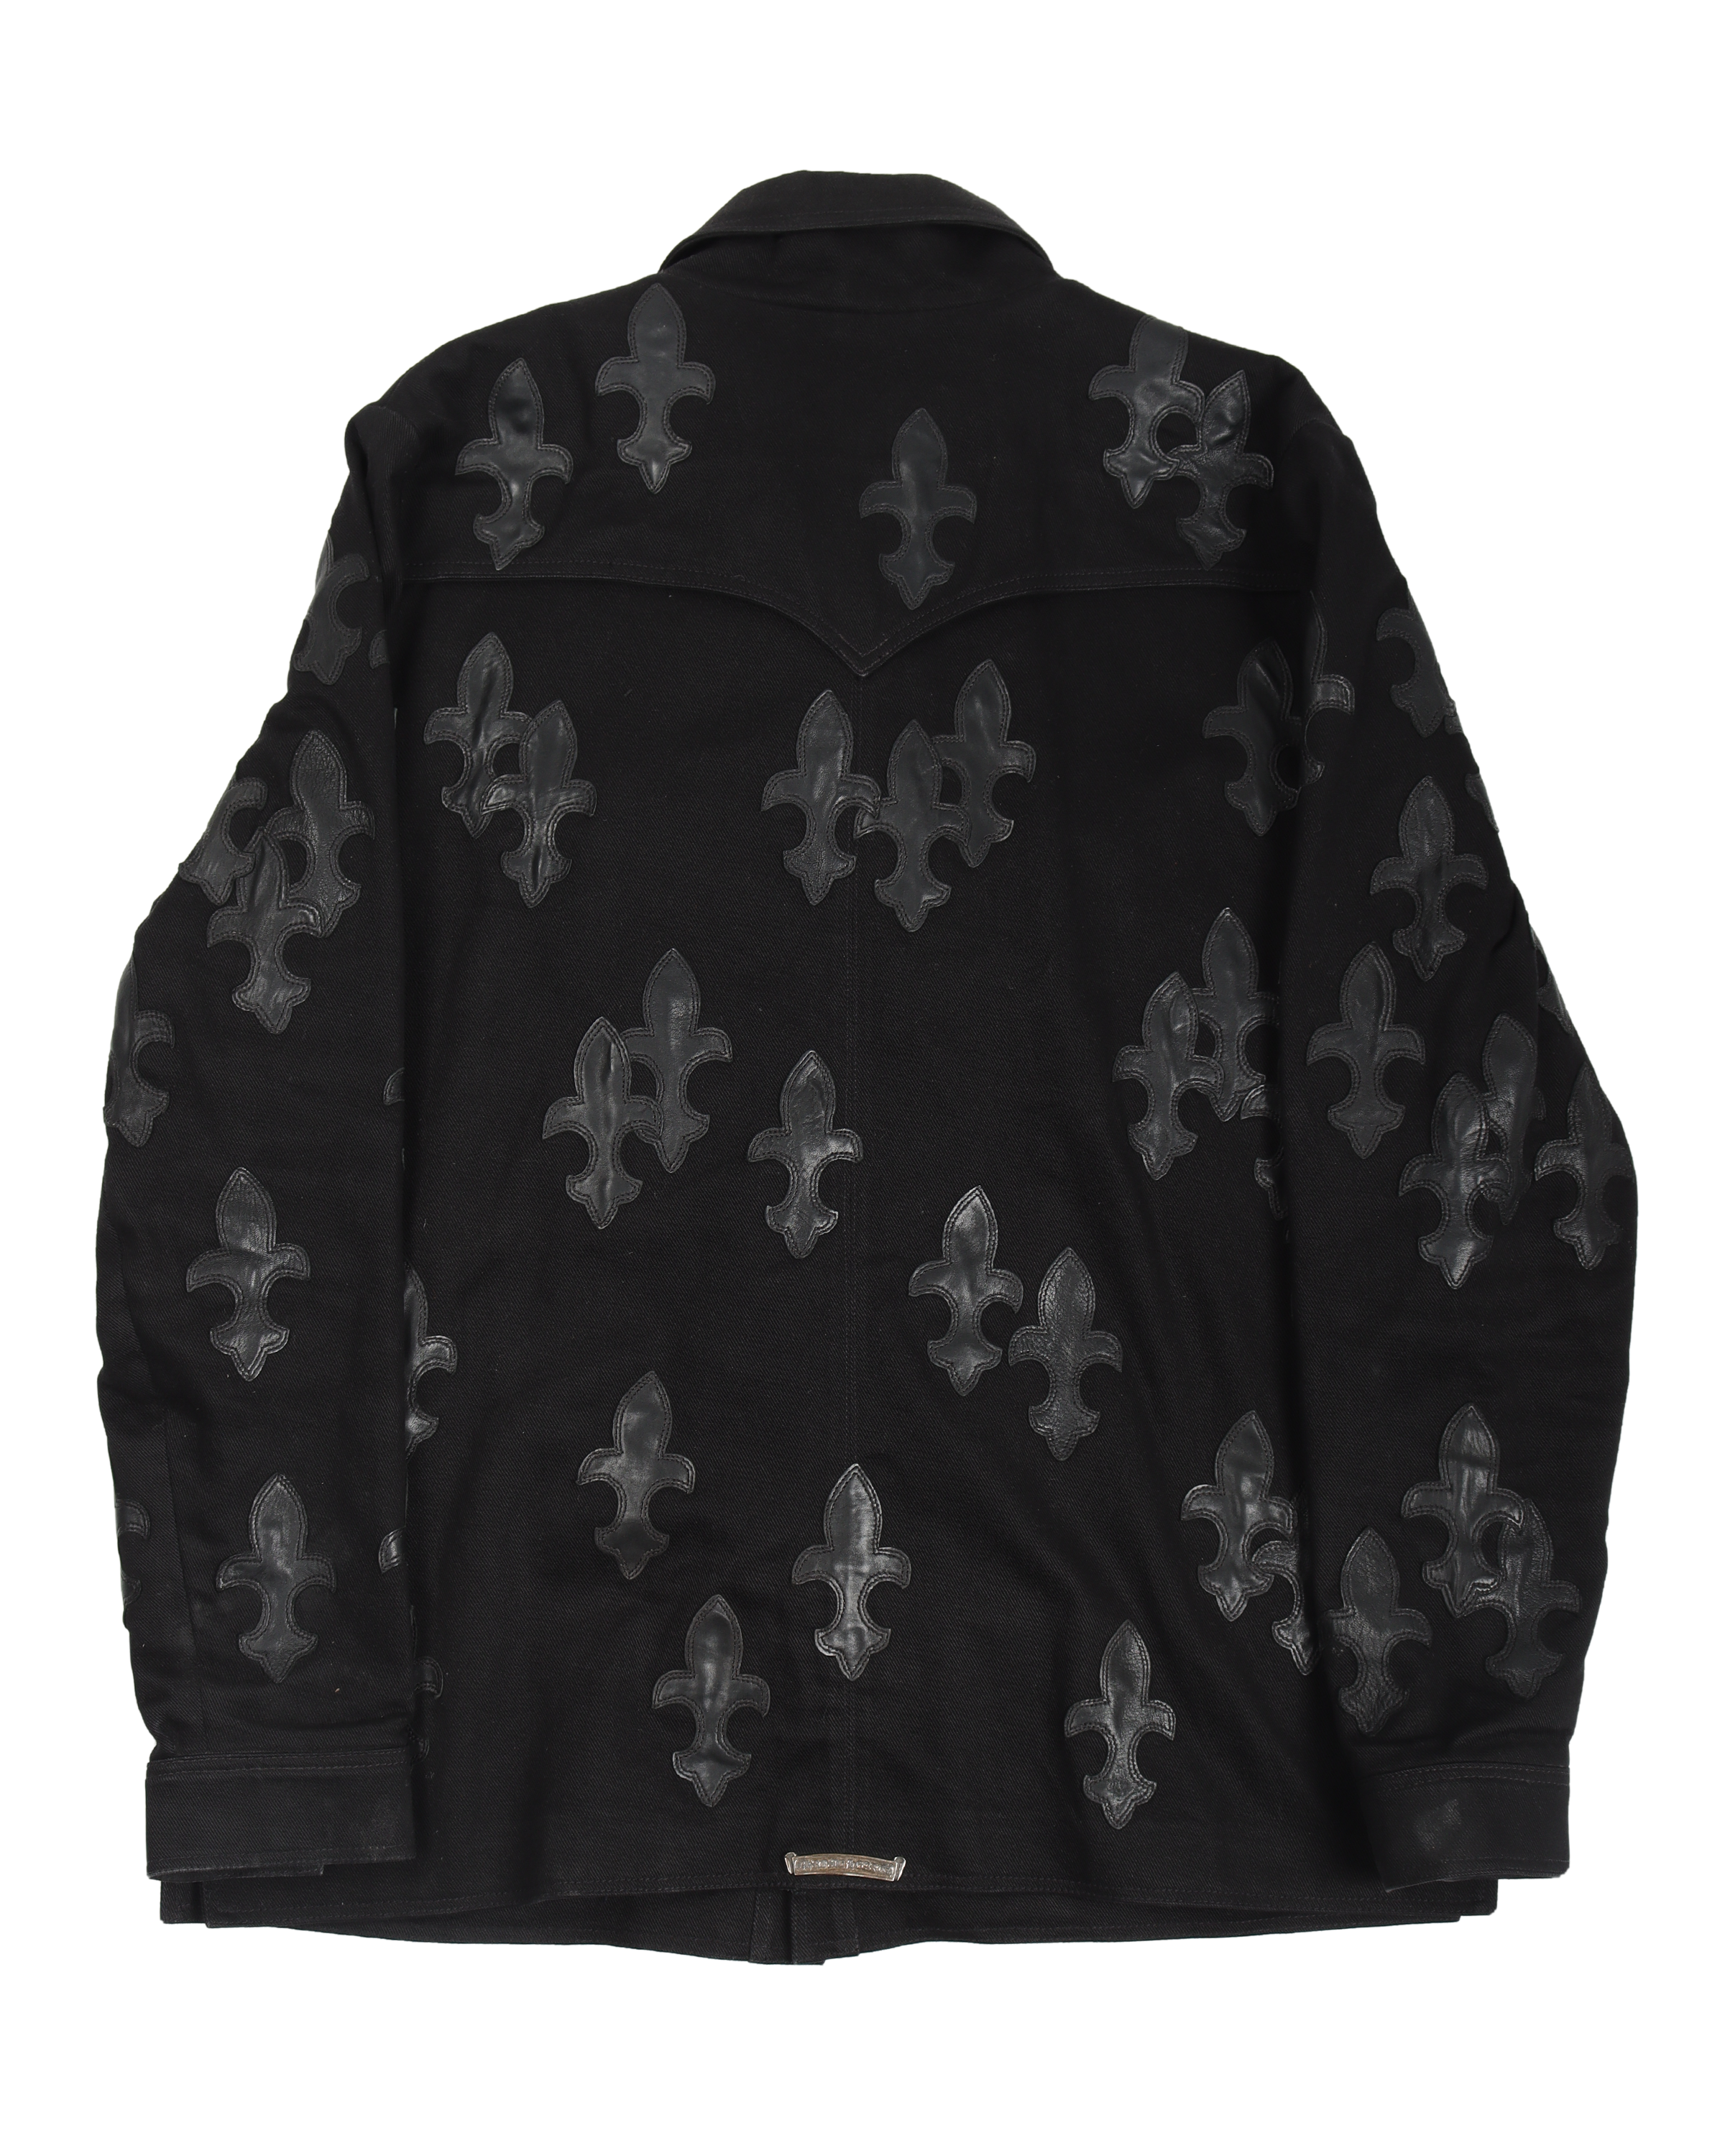 Fleur-de-lis 97 Patch Black Denim Jacket